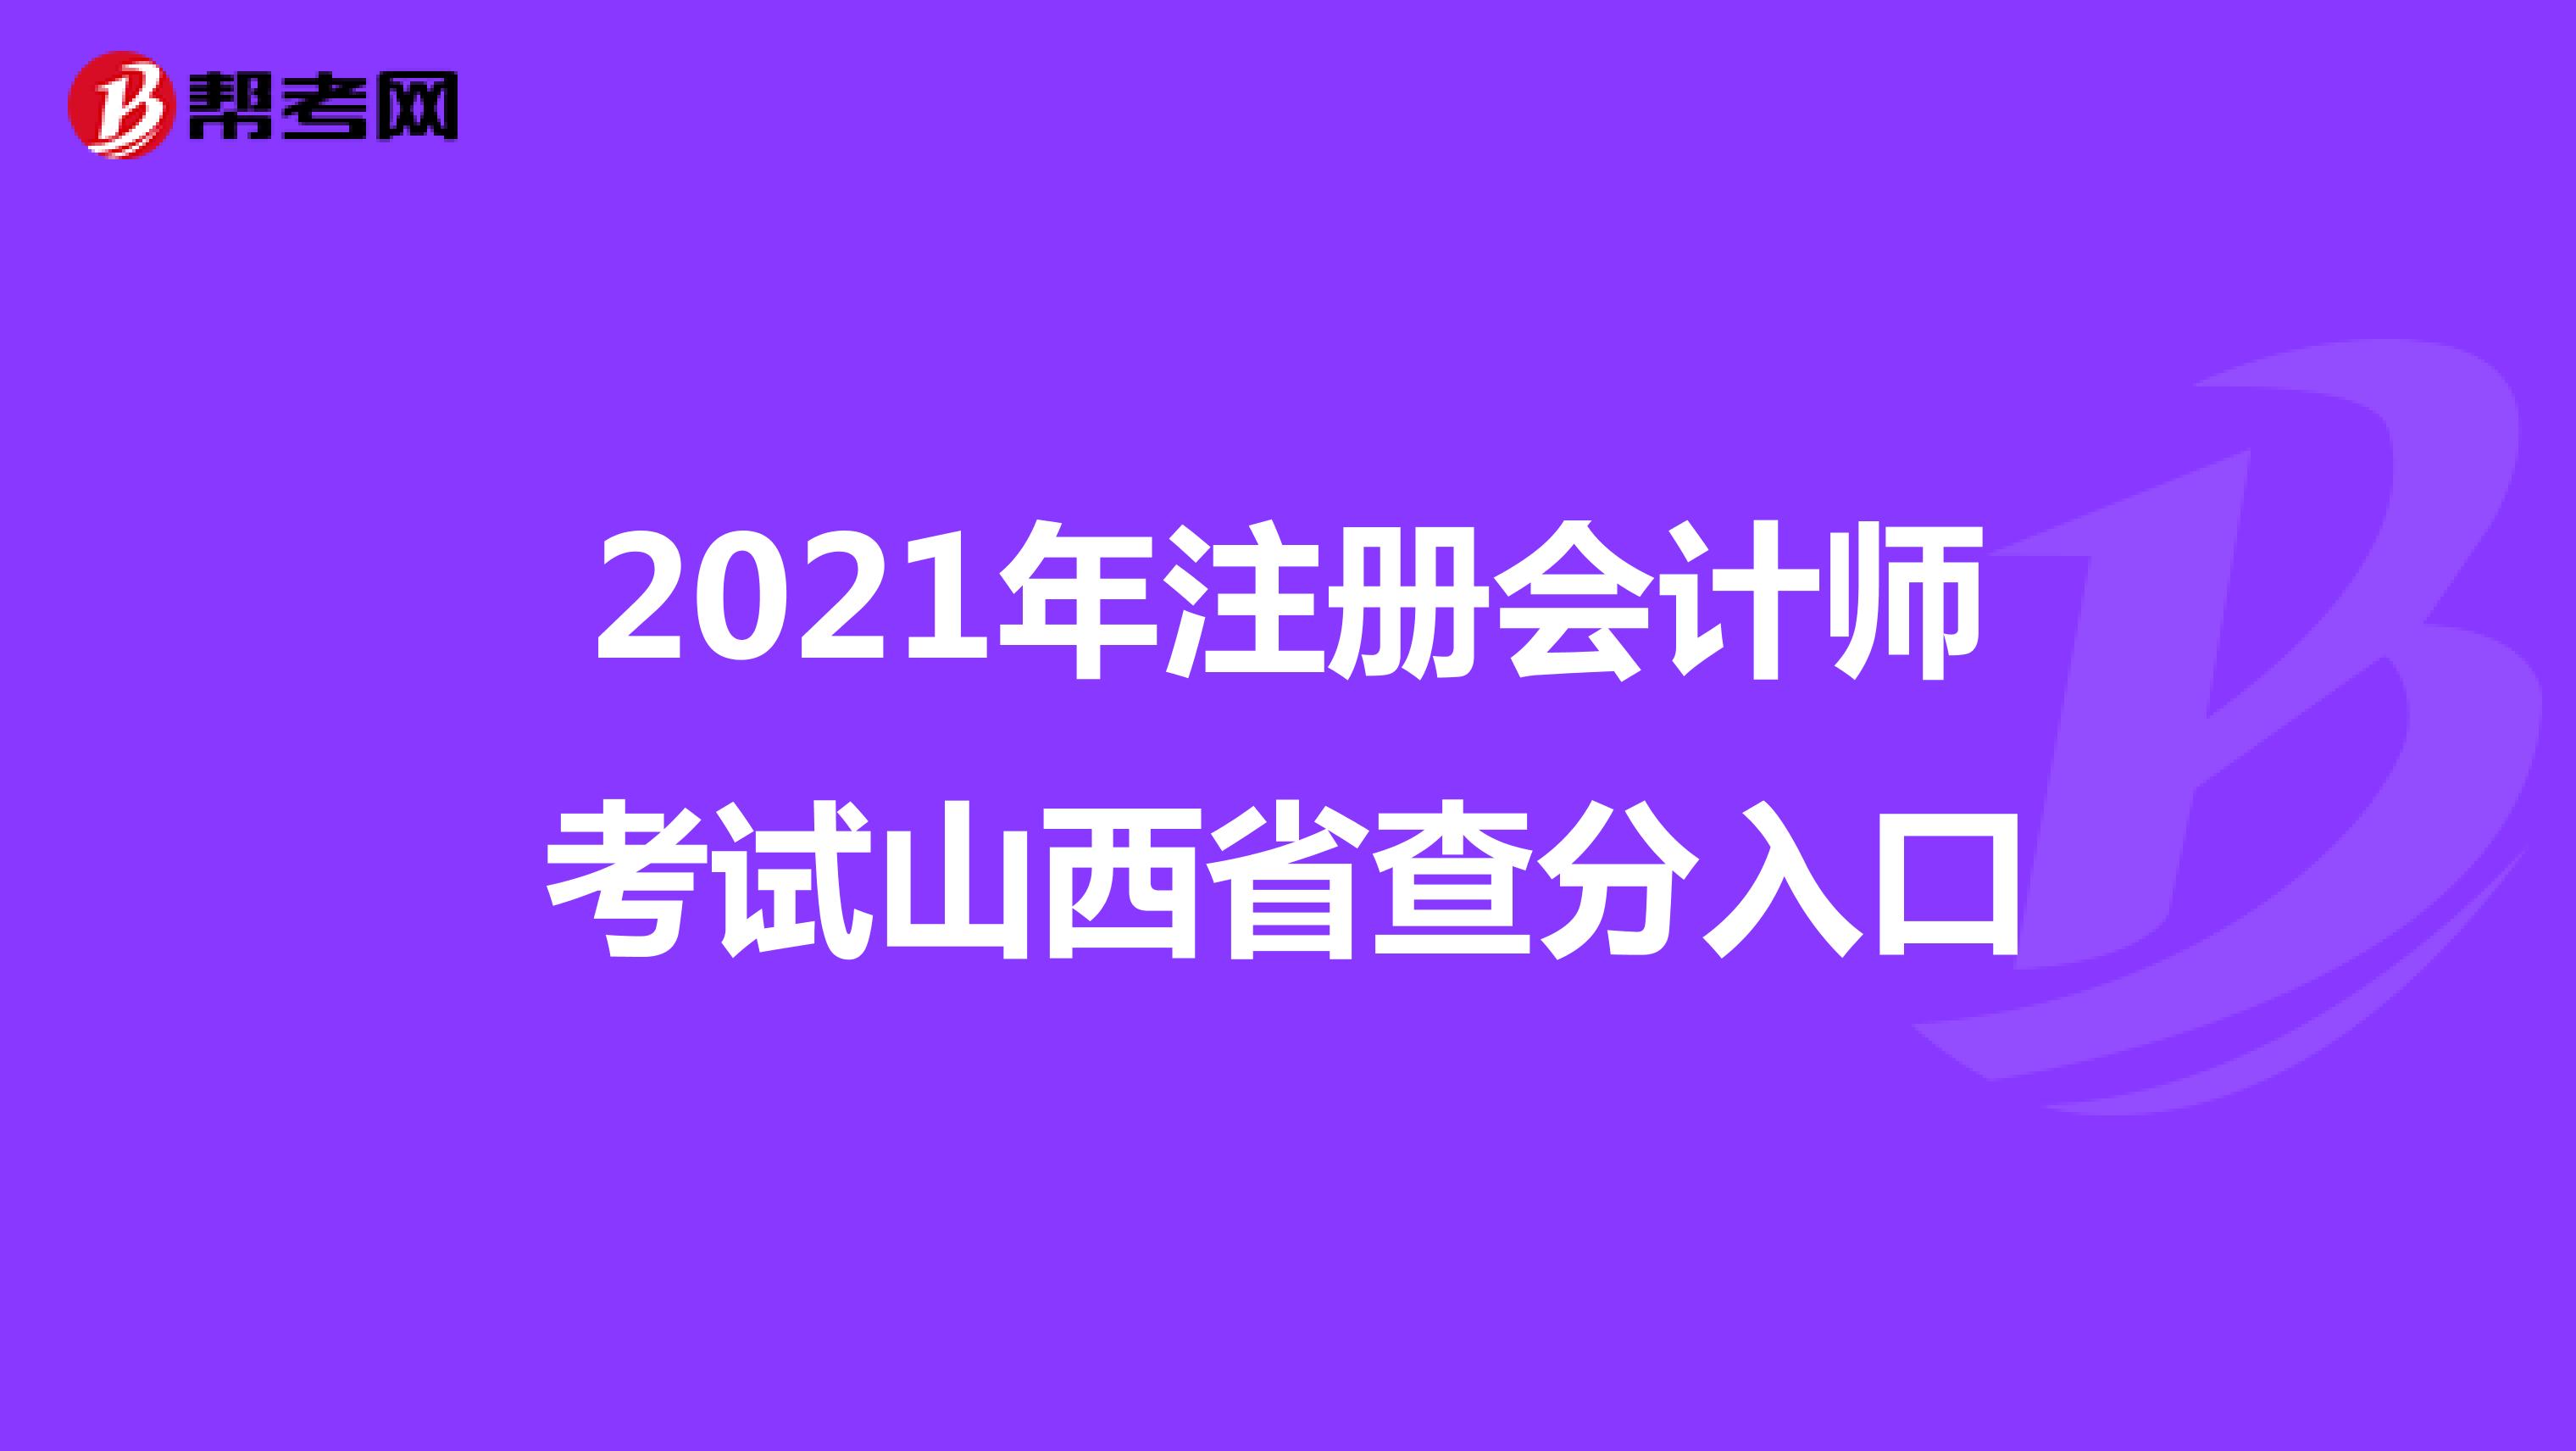 2021年注册会计师考试山西省查分入口